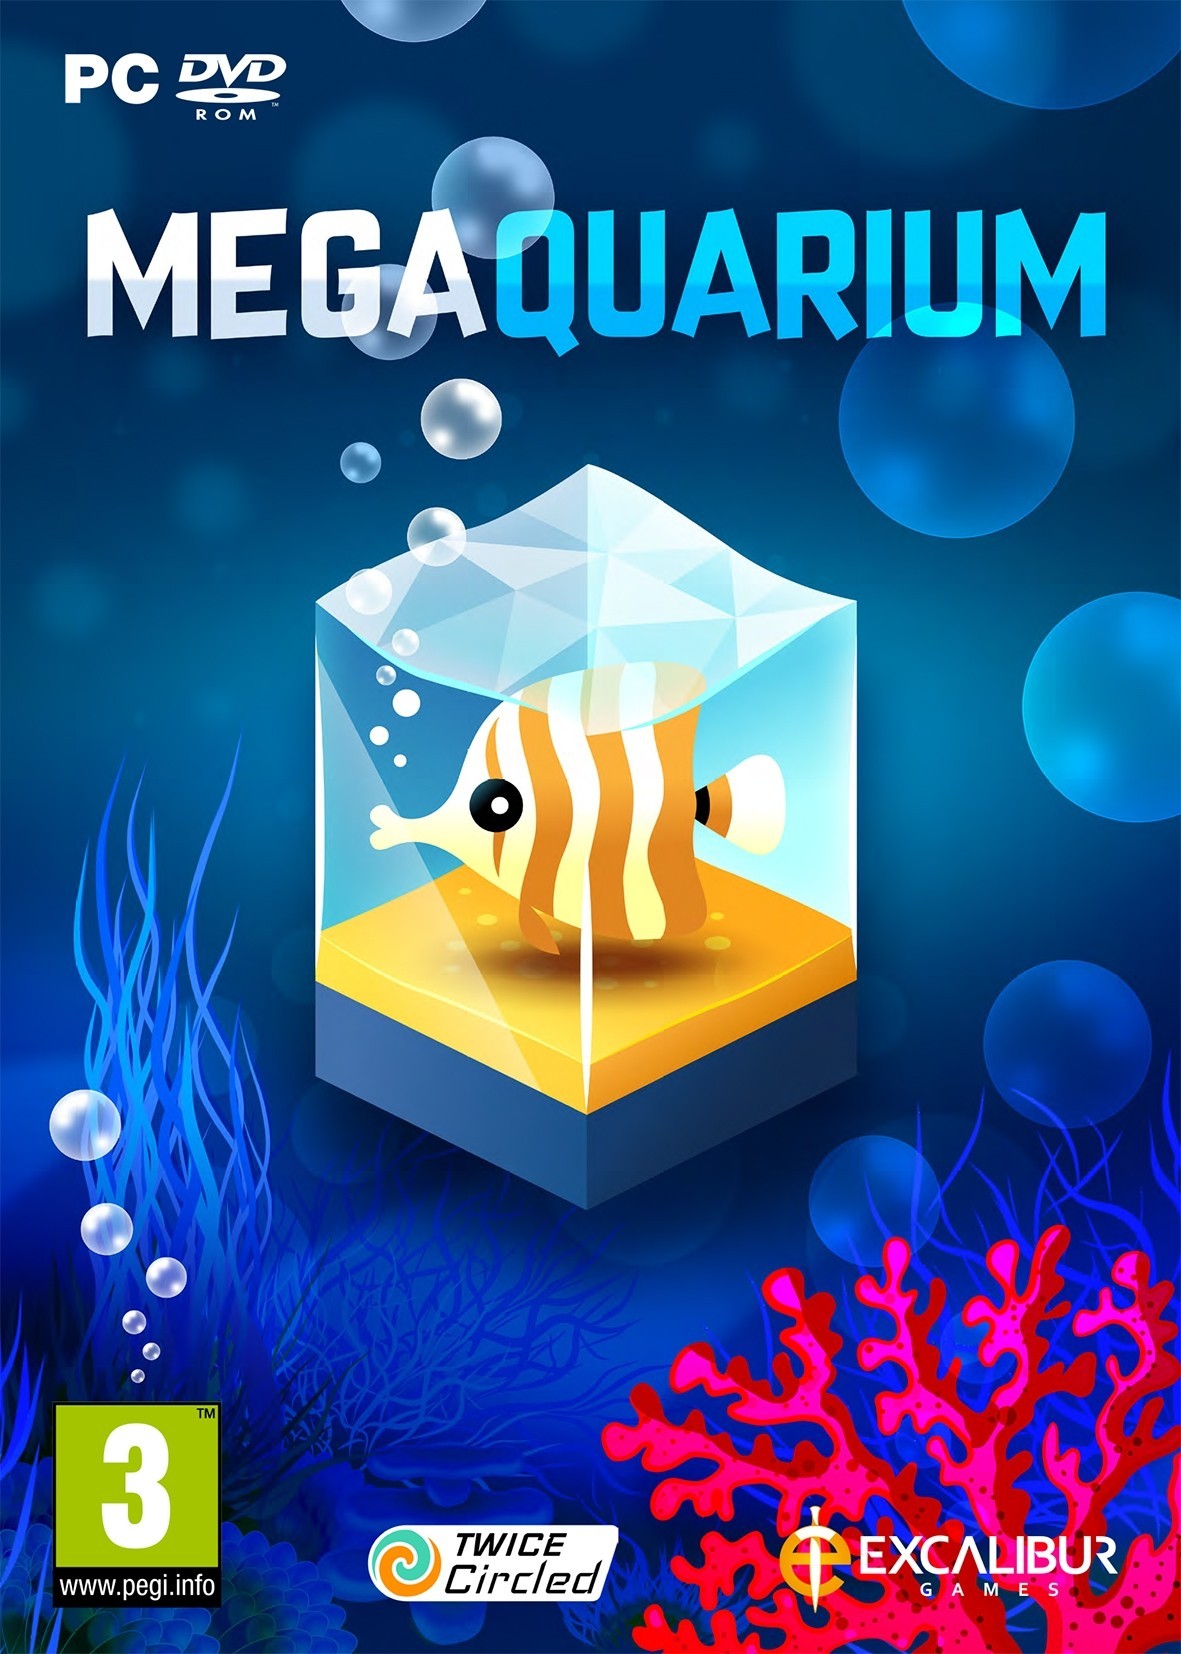 Megaquarium (PC), Excalibur Games